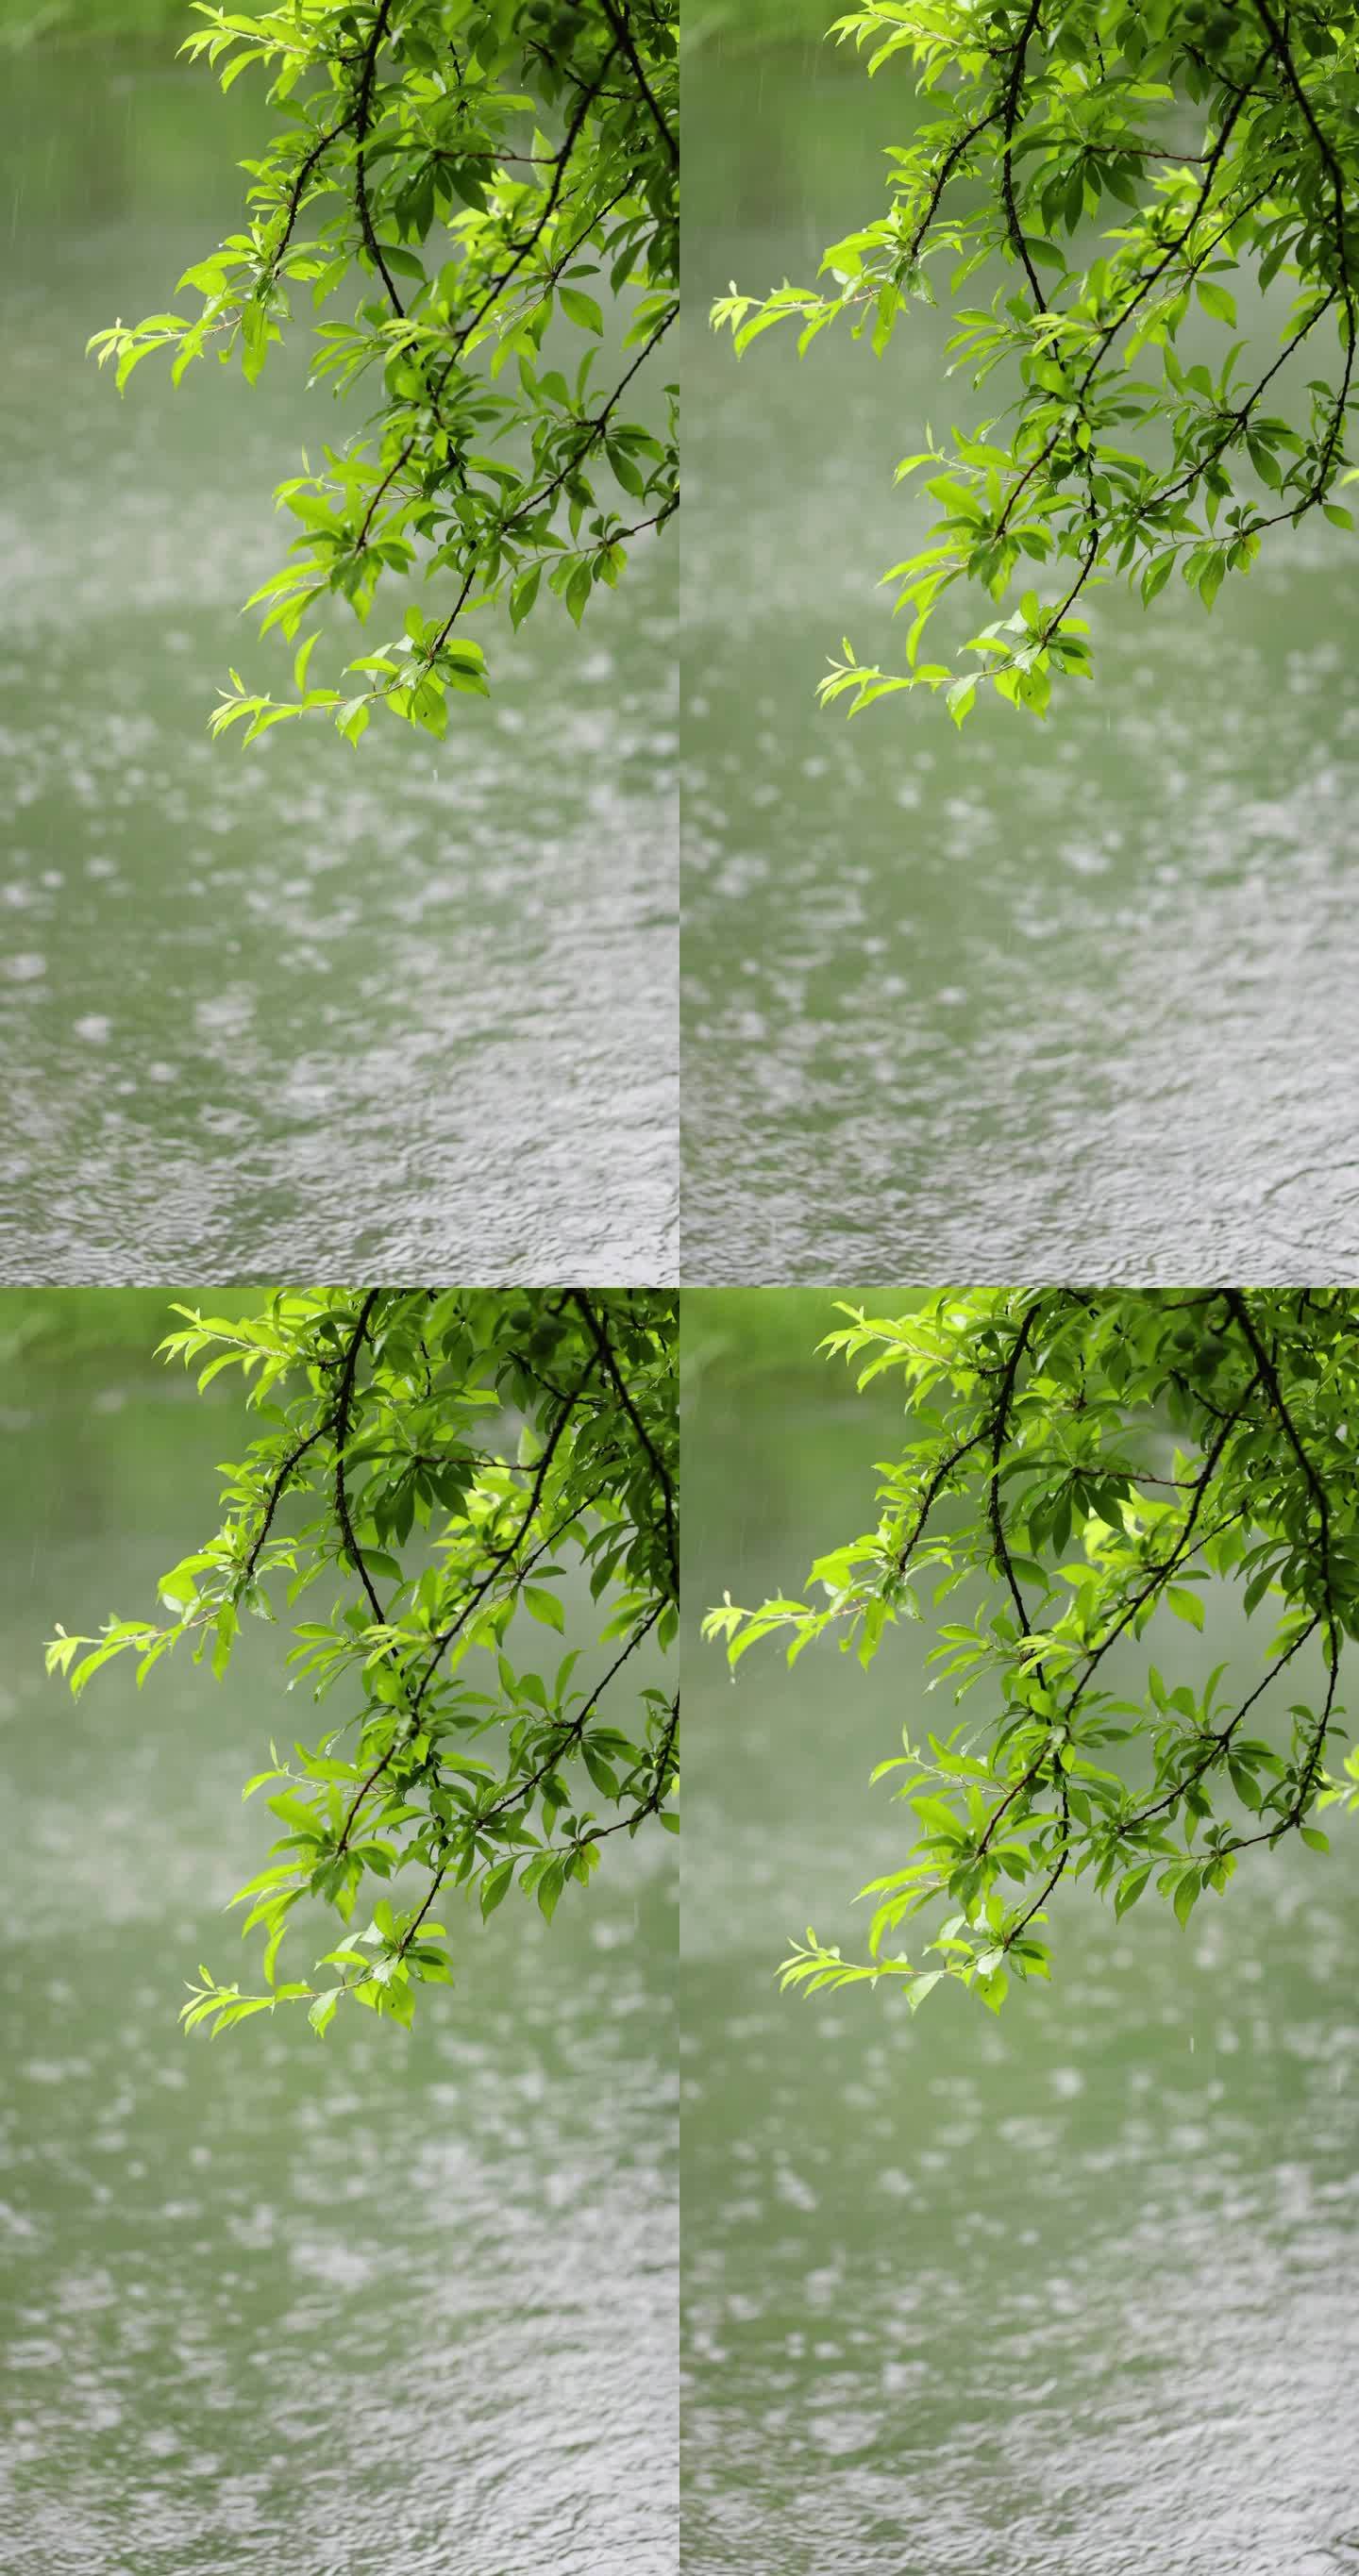 （慢镜）下雨天雨水落在湖面上竖版竖屏